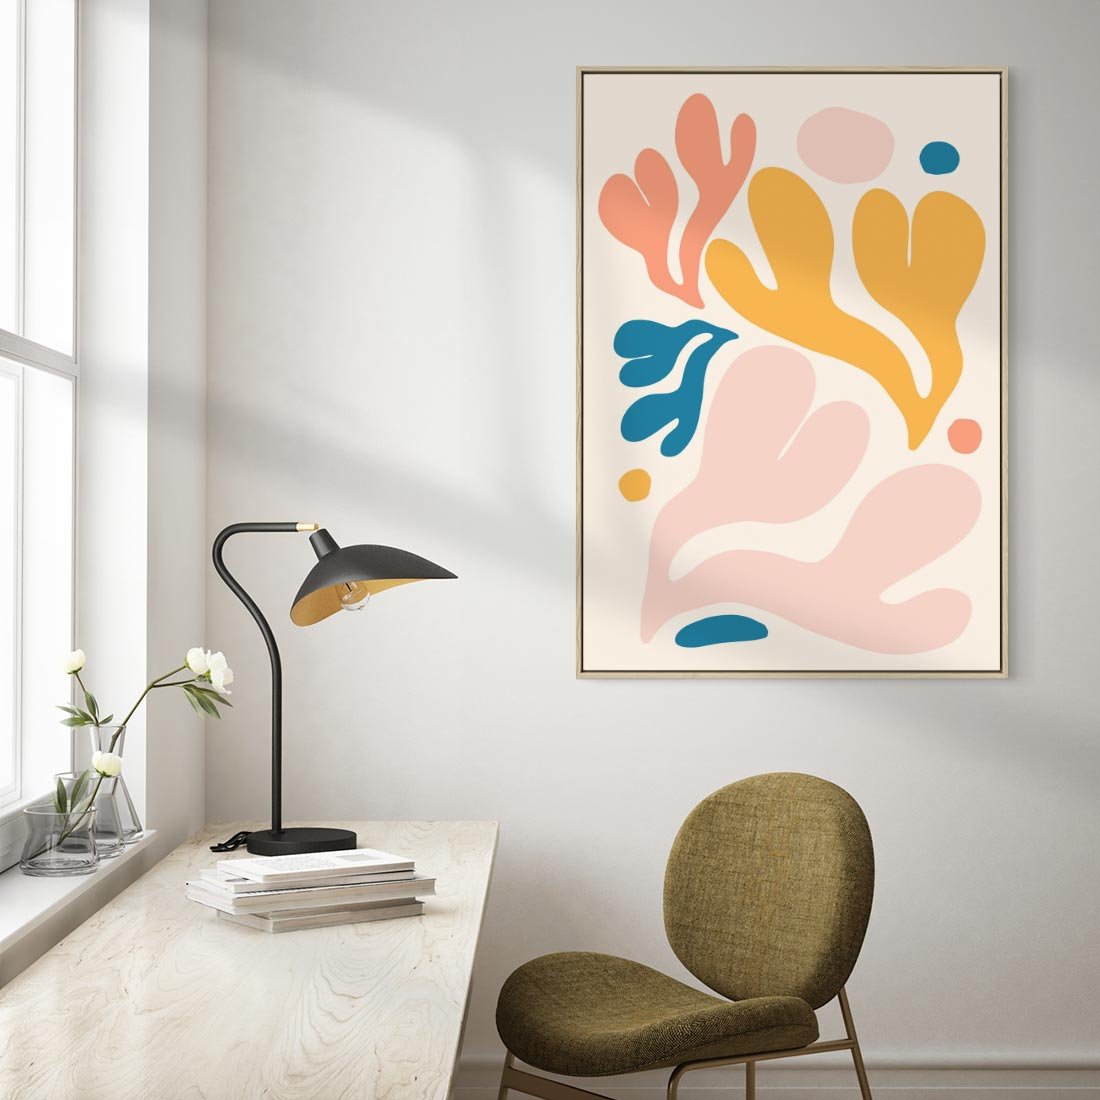 Obraz w ramie 50x70 - Granice Inspiracji - abstrakcyjne dziwne formy, nowoczesny plakat - rama drewno